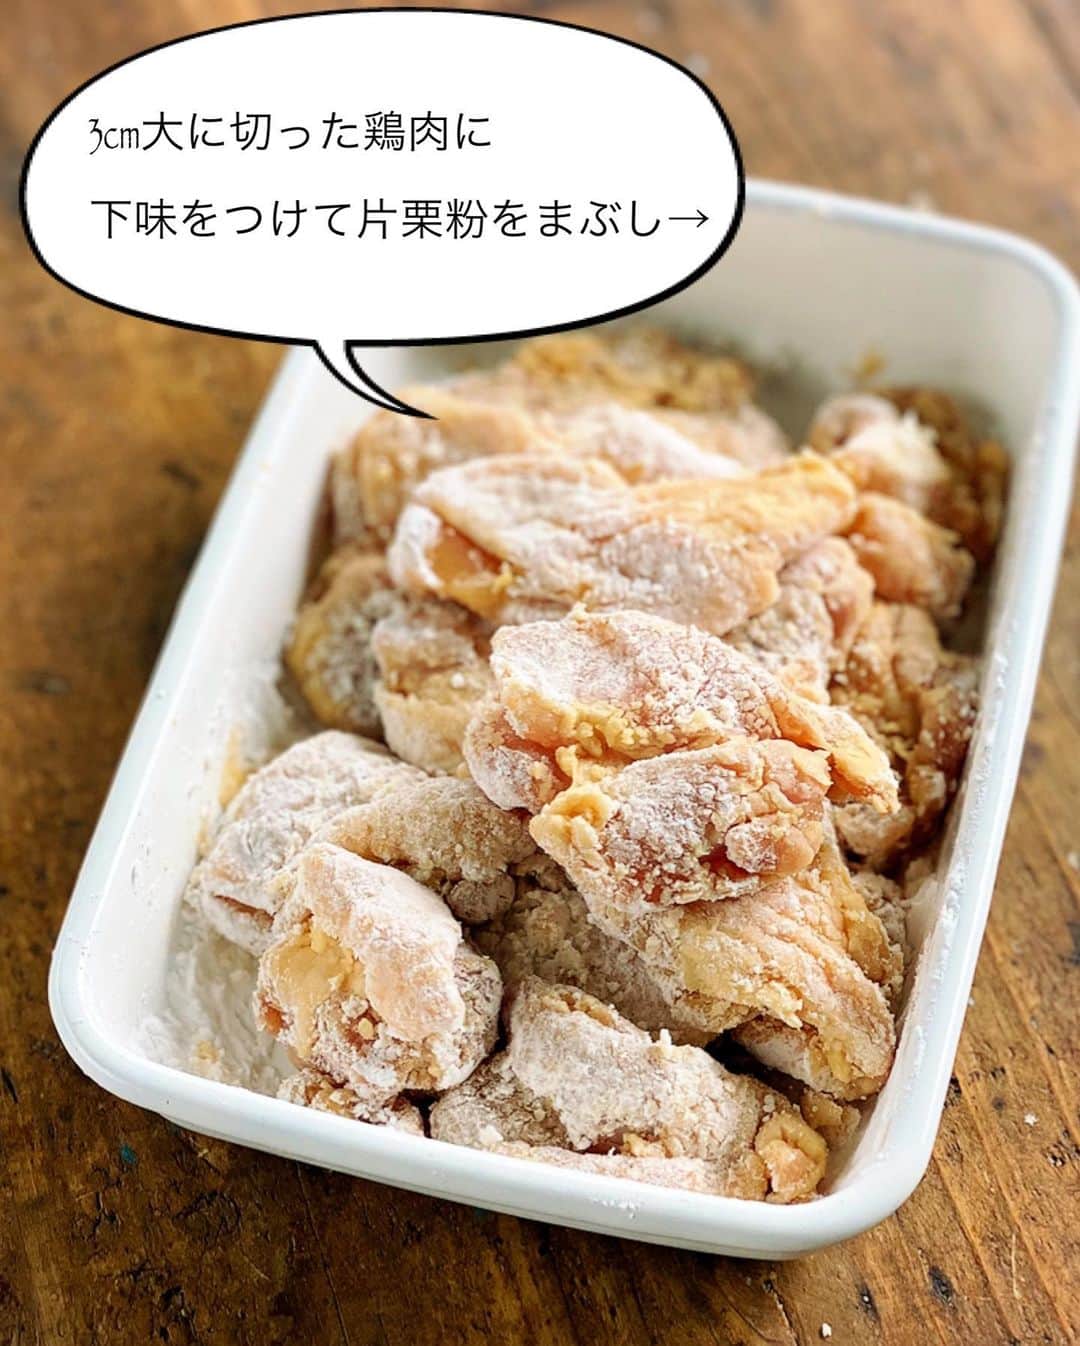 Mizuki【料理ブロガー・簡単レシピ】さんのインスタグラム写真 - (Mizuki【料理ブロガー・簡単レシピ】Instagram)「・﻿ 【レシピ】ーーーーーーーーーーー﻿ ♡主役はタルタル♡鶏の焼き唐♡﻿ ーーーーーーーーーーーーーーーー﻿ ﻿ ﻿ ﻿ おはようございます(*^^*)﻿ ﻿ 今日ご紹介させていただくのは﻿ タルタルソースが主役の唐揚げ♩﻿ 唐揚げは漬け込み不要！﻿ しかもたった大4の油で﻿ 揚げずに焼いて作れますよ♡﻿ ﻿ このタルタルソースはうちの定番♩﻿ 混ぜるだけでとっても美味しくできるので﻿ よかったらお試し下さいね(*´艸`)﻿ この唐揚げはもちろん﻿ エビフライやチキン南蛮とも相性抜群です♩﻿ ﻿ ﻿ ﻿ ーーーーーーーーーーーーーーーーーーーー﻿ 【2〜3人分】﻿ ゆで卵...2個﻿ 玉ねぎ...1/6個﻿ ●マヨネーズ...大4〜5﻿ ●砂糖・酢...各小1﻿ ●塩こしょう...少々﻿ ●(あれば)パセリのみじん切り...適量﻿ 鶏もも肉...大1枚(300g)﻿ ☆醤油・酒...各大1﻿ ☆生姜チューブ...3cm﻿ 片栗粉・サラダ油...各適量﻿ ﻿ 1.(タルタルソースを作る)﻿ ゆで卵は粗みじん切りにする。玉ねぎはみじん切りにし、水に3分晒して水気を絞る。ボウルにゆで卵、玉ねぎ、●を入れて和える。﻿ 2.(焼き唐を作る)﻿ 鶏肉は3cm大に切り、☆を揉み込み片栗粉をまぶす。フライパンにサラダ油大4を入れて中火で熱し、2を返しながら焼いて火を通す(7〜8分)。﻿ 3.油を切って器に盛り、1のタルタルソースをかける。﻿ ーーーーーーーーーーーーーーーーーーーー﻿ ﻿ ﻿ ﻿ 《ポイント》﻿ ♦︎玉ねぎは水に晒すと辛味が抜けます♩﻿ ♦︎鶏むね肉で作る場合は、全体をフォークで刺し、1cm厚さの削ぎ切りにして下さい♩焼き時間は短くなります♩﻿ ﻿ ﻿ ﻿ ﻿ ﻿ ↓ ↓ ↓﻿ 先日はインスタライブをご視聴下さり﻿ 誠にありがとうございました😊﻿ 皆さんとやり取りしながらのライブ﻿ とても楽しかったです🥰﻿ 序盤に猫(マノさん)🐈が鳴く(笑)﻿ オイルを入れ忘れるwなど﻿ 見返したら笑ってしまいました😂﻿ (お騒がせしてすみません🙇‍♀️)﻿ ご紹介させていただいたレモンパウンドは﻿ その後たくさん作っていただけたようで﻿ ご投稿を嬉しく拝見しております💓﻿ ﻿ そしてその中でお話させていただいた通り﻿ ただ今繁忙期に入っておりますので﻿ 8月までは更新が減ってしまいそうです•••﻿ ﻿ この間過去のレシピをストーリーに上げたり﻿ 皆さんが投稿して下さったストーリーを﻿ 私の方でシェアさせてもらったり、と、﻿ そんなこともしたいなって思っています♩﻿ (やり方を勉強しなければ😂)﻿ ﻿ とはいえ、今日のようにできる時には﻿ 更新させていただきたいと思いますので﻿ どうぞお付き合い下さいませ🥰﻿ 今後ともよろしくお願いしますm(_ _)m💓﻿ ﻿ ﻿ ﻿ ﻿ ﻿ ﻿ ﻿ 🆕🆕🆕🆕🆕🆕🆕🆕🆕🆕﻿ 【🎥YouTube更新しました🎥】﻿ (＊ハイライトから飛べます♩)﻿ ↓﻿ 🍆レンジで簡単！焼肉のたれで麻婆なす﻿ 🍕世界一簡単なホケミピザ﻿ 🧁ホケミで！クッキー&クリームマフィン﻿ 🍳揉んで焼くだけ！やみつきチキン﻿ 🌭材料4つ！アメリカンドッグ﻿ ﻿ ﻿ ﻿ ﻿ ﻿ 5刷重版しました🔻﻿ 本当にありがとうございます🙇‍♀️﻿ ＿＿＿＿＿＿＿＿＿＿＿＿＿＿＿＿＿＿＿﻿ 📕\ \ 新刊発売中 / /📕﻿ 簡単・時短！ 毎日のごはんがラクになる﻿ ✨🦋 【 #Mizukiの今どき和食 】🦋✨﻿ ＿＿＿＿＿＿＿＿＿＿＿＿＿＿＿＿＿＿＿﻿ なるべく少ない材料で﻿ 手間も時間も省きながら﻿ 簡単にできるおいしい和食レシピ♩﻿ 簡単に失敗なくマスターできる一冊で﻿ もっと気軽に、カジュアルに﻿ 和食を楽しんで下さいね(*^^*)﻿ ＿＿＿＿＿＿＿＿＿＿＿＿＿＿＿＿＿＿＿﻿ ﻿ ﻿ ﻿  ＿＿＿＿＿＿＿＿＿＿＿＿＿＿＿＿＿﻿ 🎀6刷重版しました🎀﻿ 混ぜて焼くだけ。はじめてでも失敗しない！﻿ 【#ホットケーキミックスのお菓子 】﻿ ﻿ 一冊まるっとホケミスイーツ♩﻿ 普段のおやつから﻿ 特別な日にも使えるレシピを﻿ この一冊に詰め込みました(*^^*)﻿ ホットケーキミックスを使えば﻿ 簡単に本格的なお菓子が作れますよ♡﻿ ＿＿＿＿＿＿＿＿＿＿＿＿＿＿＿＿＿﻿ ﻿ ⭐️ストーリー、ハイライト、プロフ画面に﻿ 本のURLを貼らせていただいております♩﻿ →(@mizuki_31cafe )﻿ ﻿ ﻿ ﻿ ﻿ #揚げない#唐揚げ#タルタルソース#鶏の唐揚げ#万能#Mizuki#簡単レシピ#時短レシピ#節約レシピ#料理#レシピ#フーディーテーブル#マカロニメイト#おうちごはん#デリスタグラマー#料理好きな人と繋がりたい#おうちごはん#写真好きな人と繋がりたいlover#foodpic#cooking#recipe#lin_stagrammer#foodporn#yummy#主役はタルタル鶏の焼き唐m」7月8日 7時27分 - mizuki_31cafe